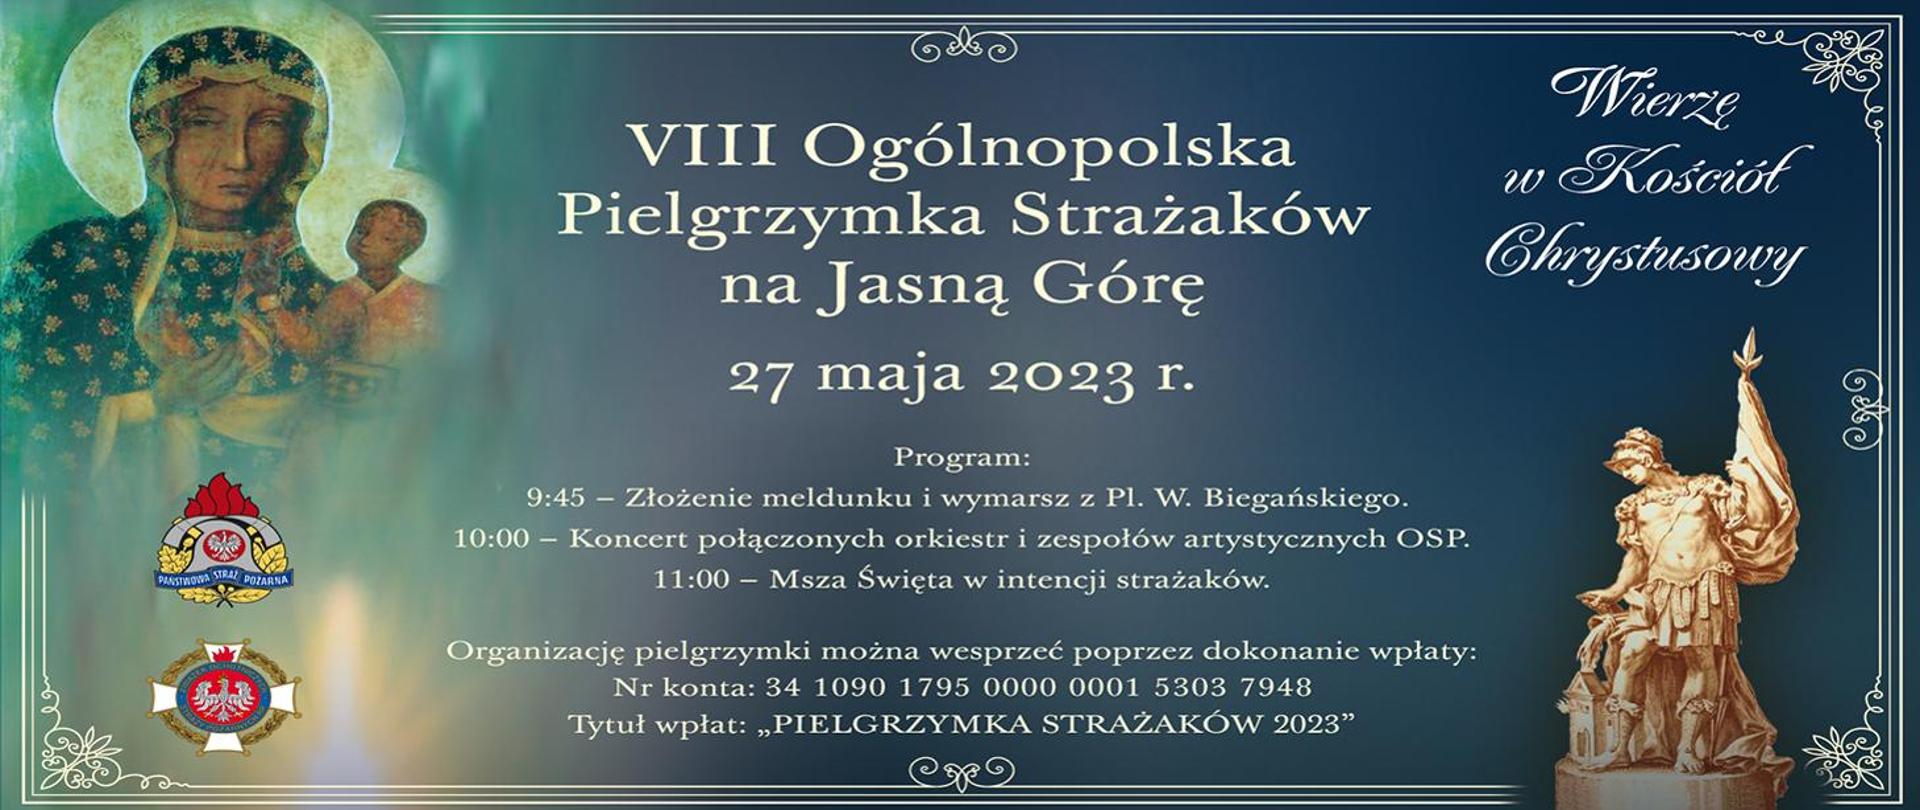 Plakat z zaproszeniem na pielgrzymkę ,, PIELGRZYNKA STRAZAKÓW 2023"